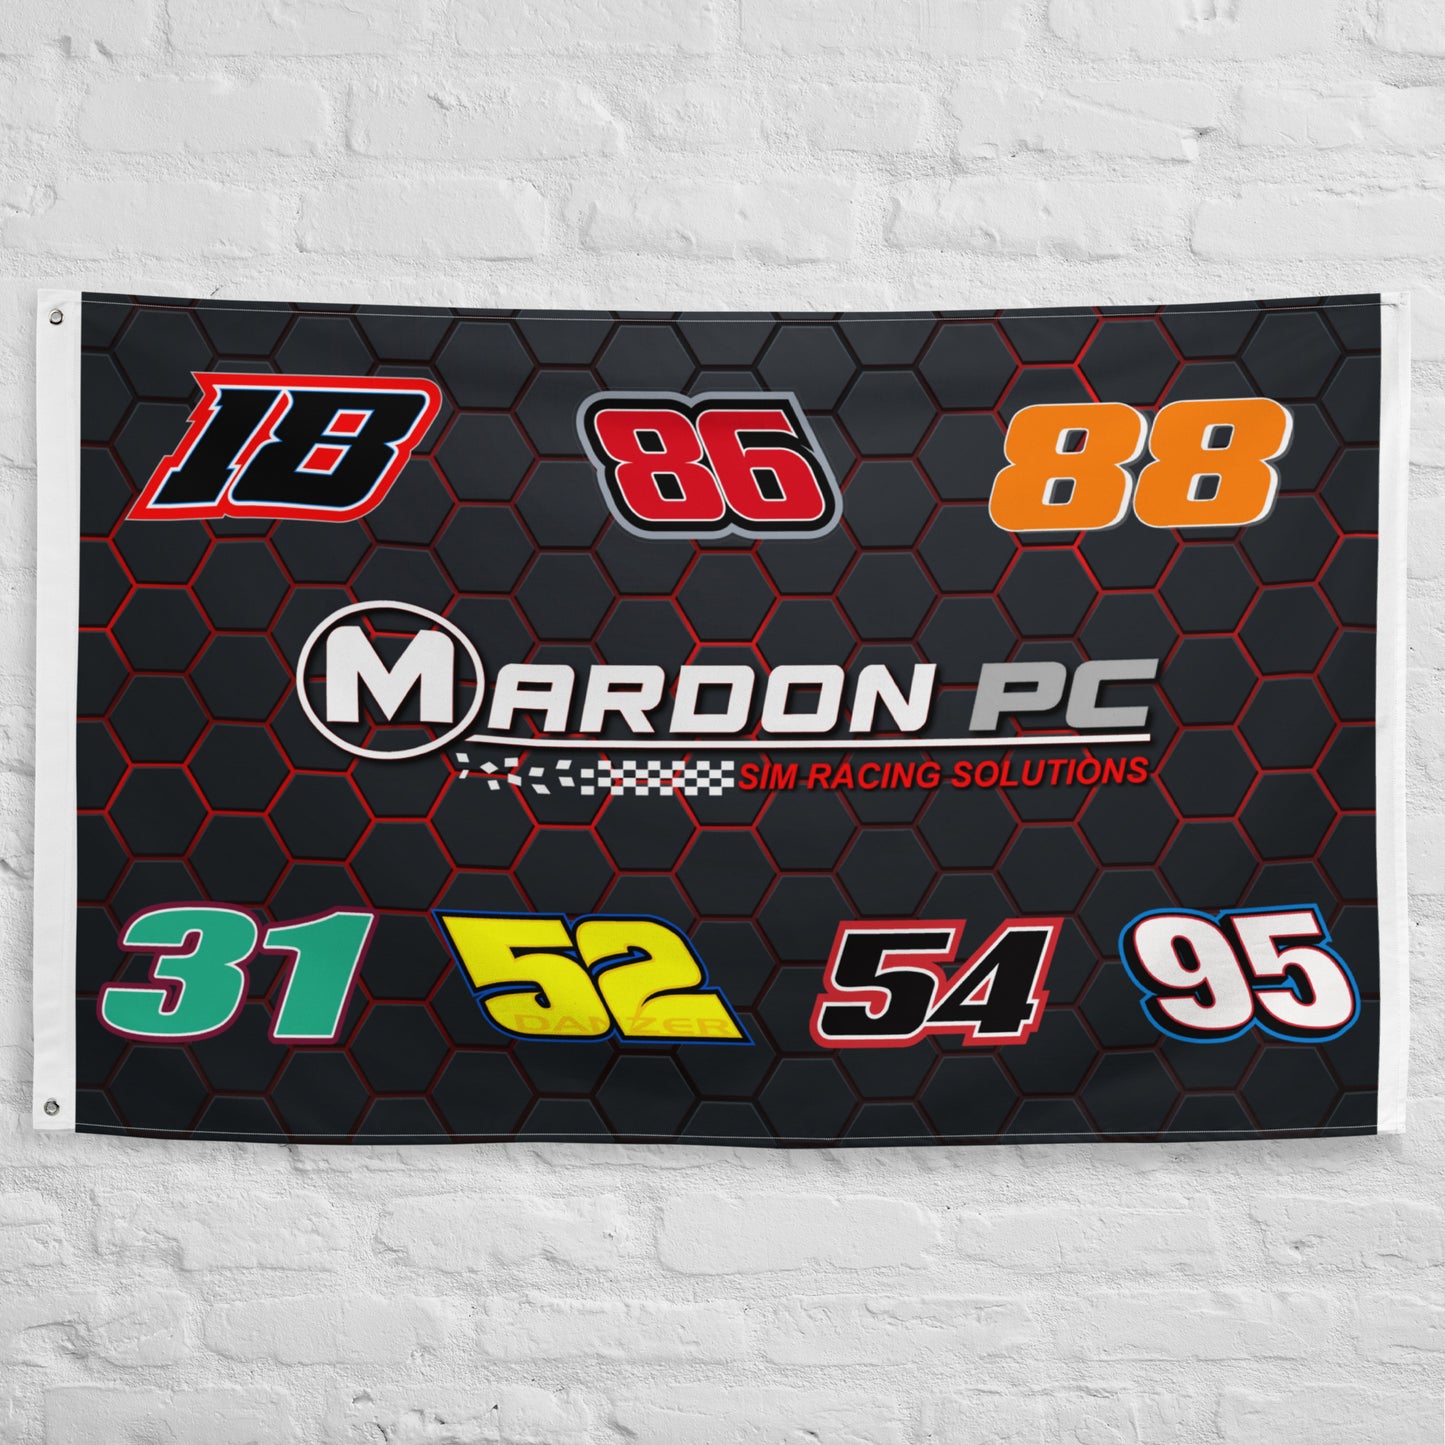 MARDON PC Team Flag